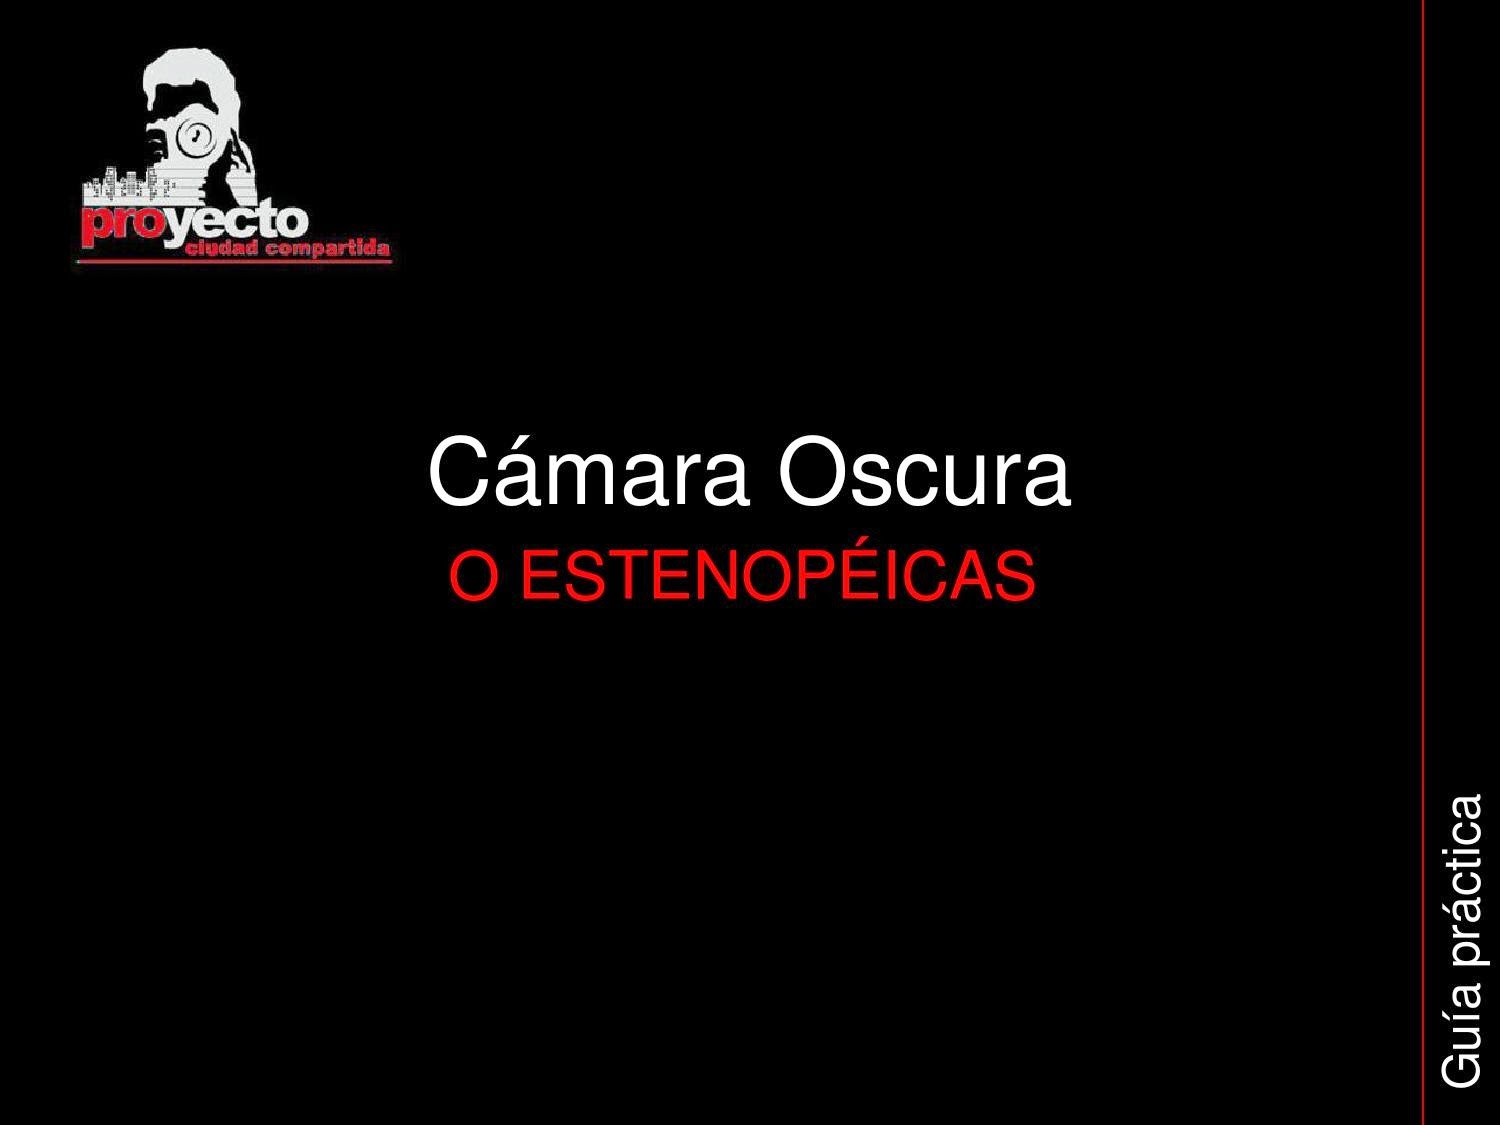 http://issuu.com/www.ciudadcompartida.com/docs/guia_practica_camara_oscura_o_esten